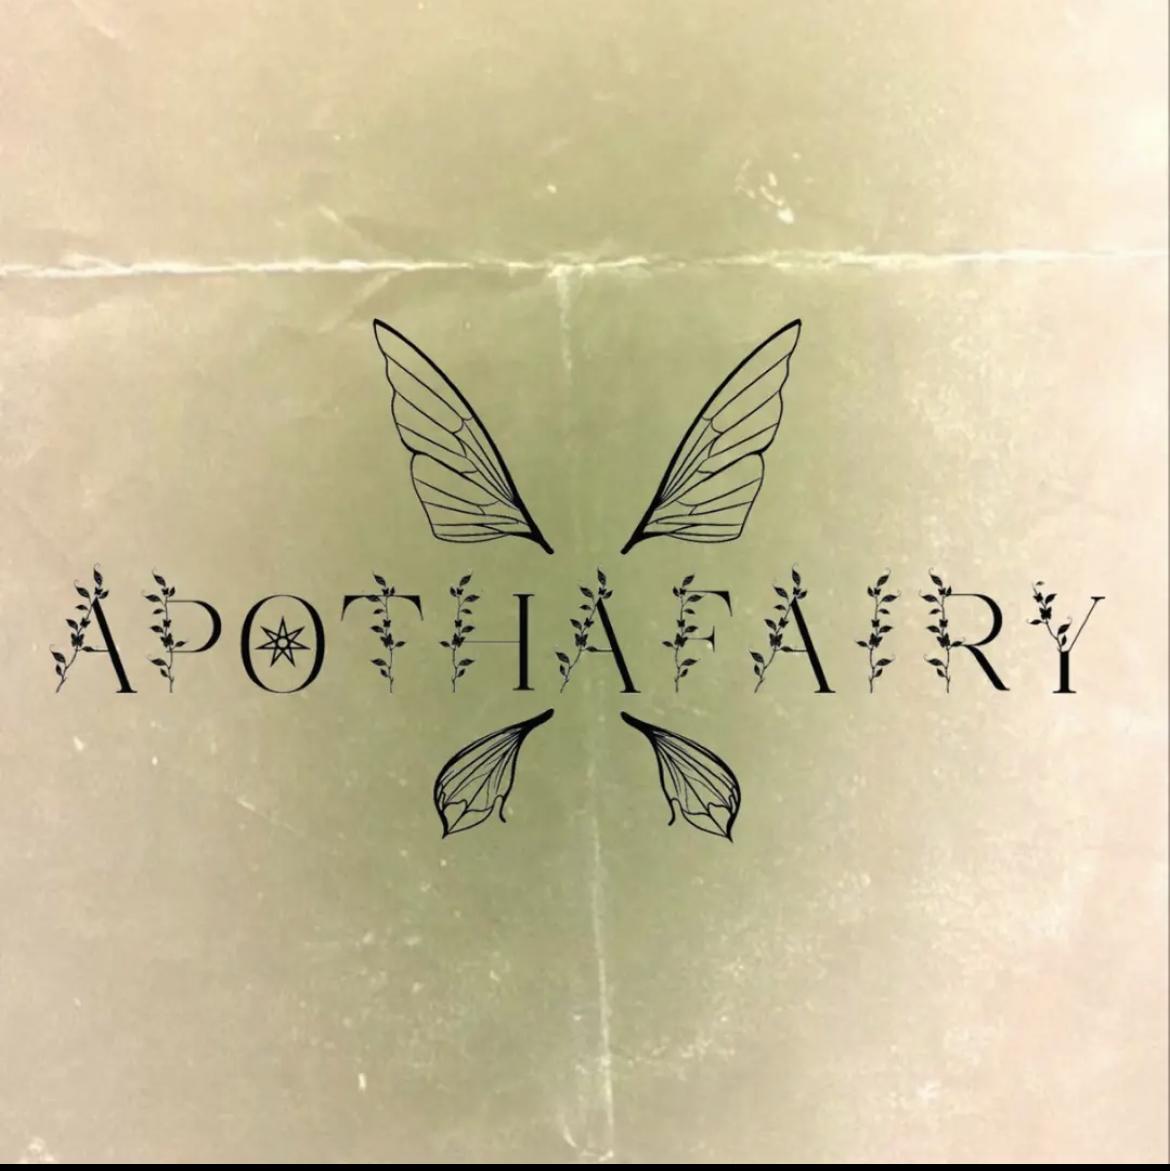 apothafairy 's images